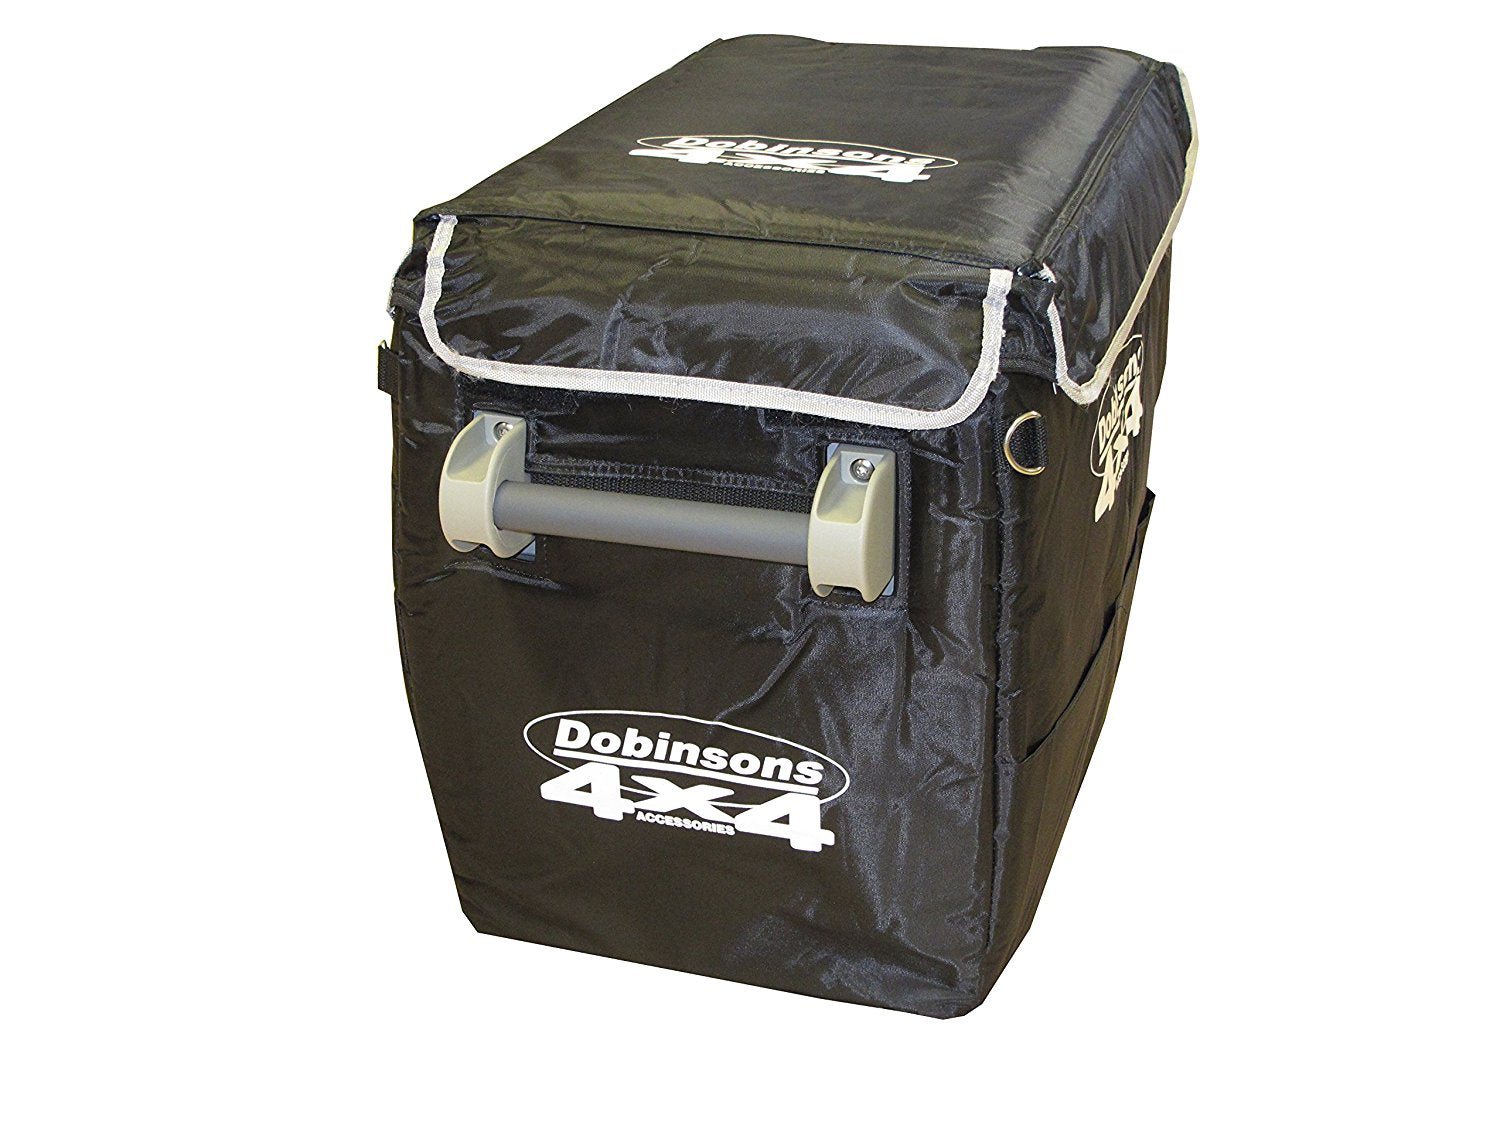 Dobinsons 4x4 40L 12V Portable Fridge Freezer